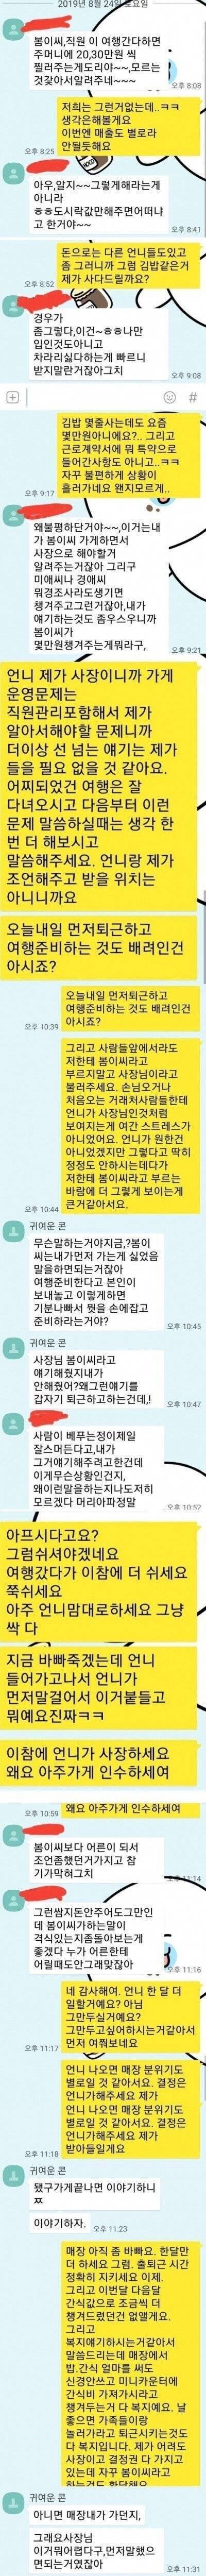 [스압] 자영업의 어려움(26세 김밥집 여사장).jpg